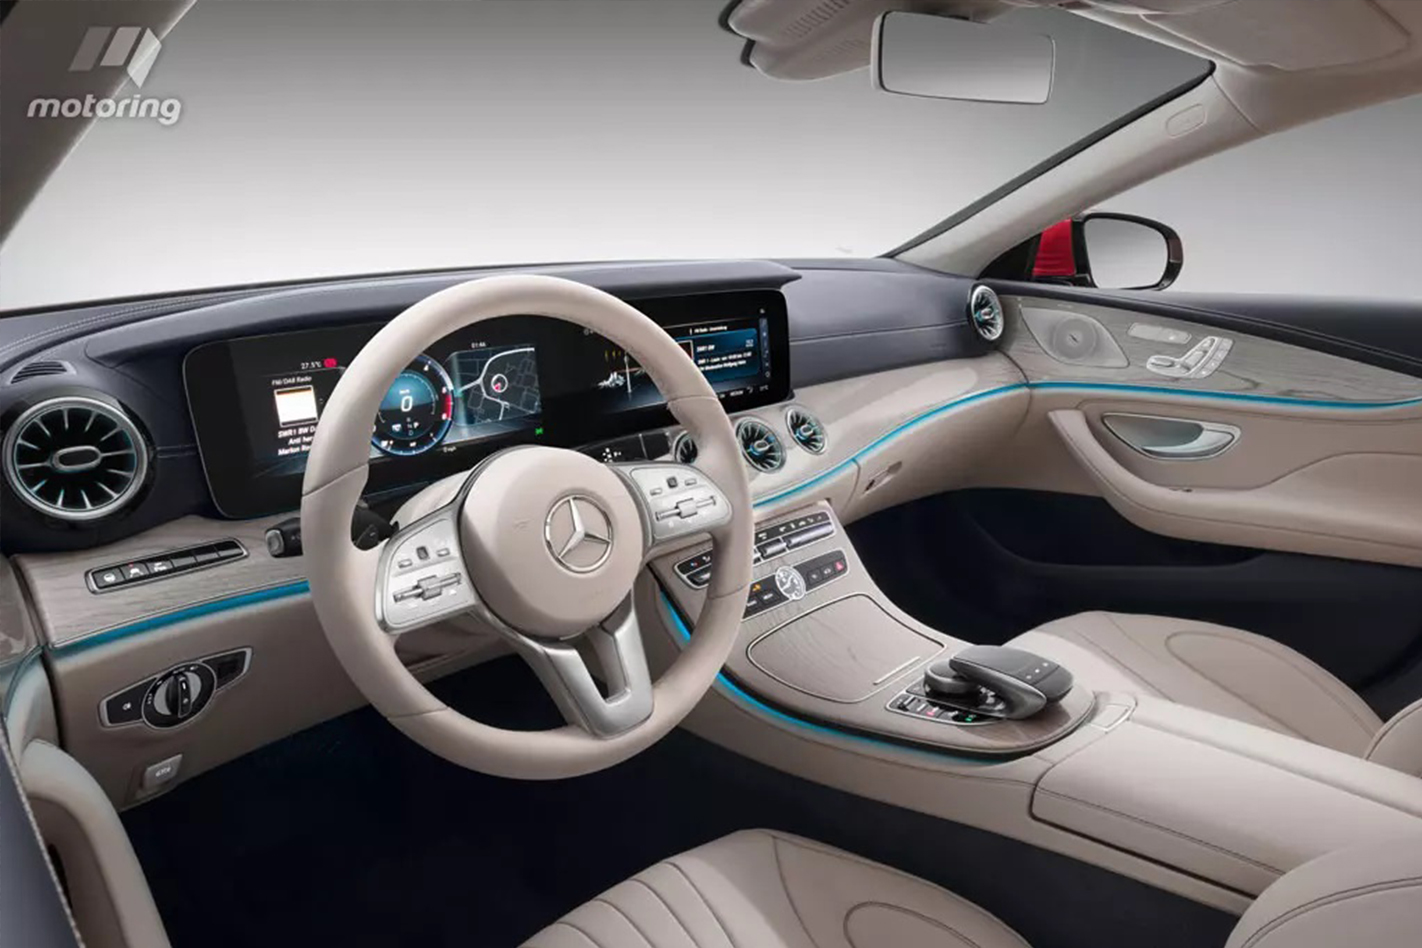 International, 2018 mercedes benz cls class interior: Bocor, Ini Wujud Mercedes Benz CLS 2018!